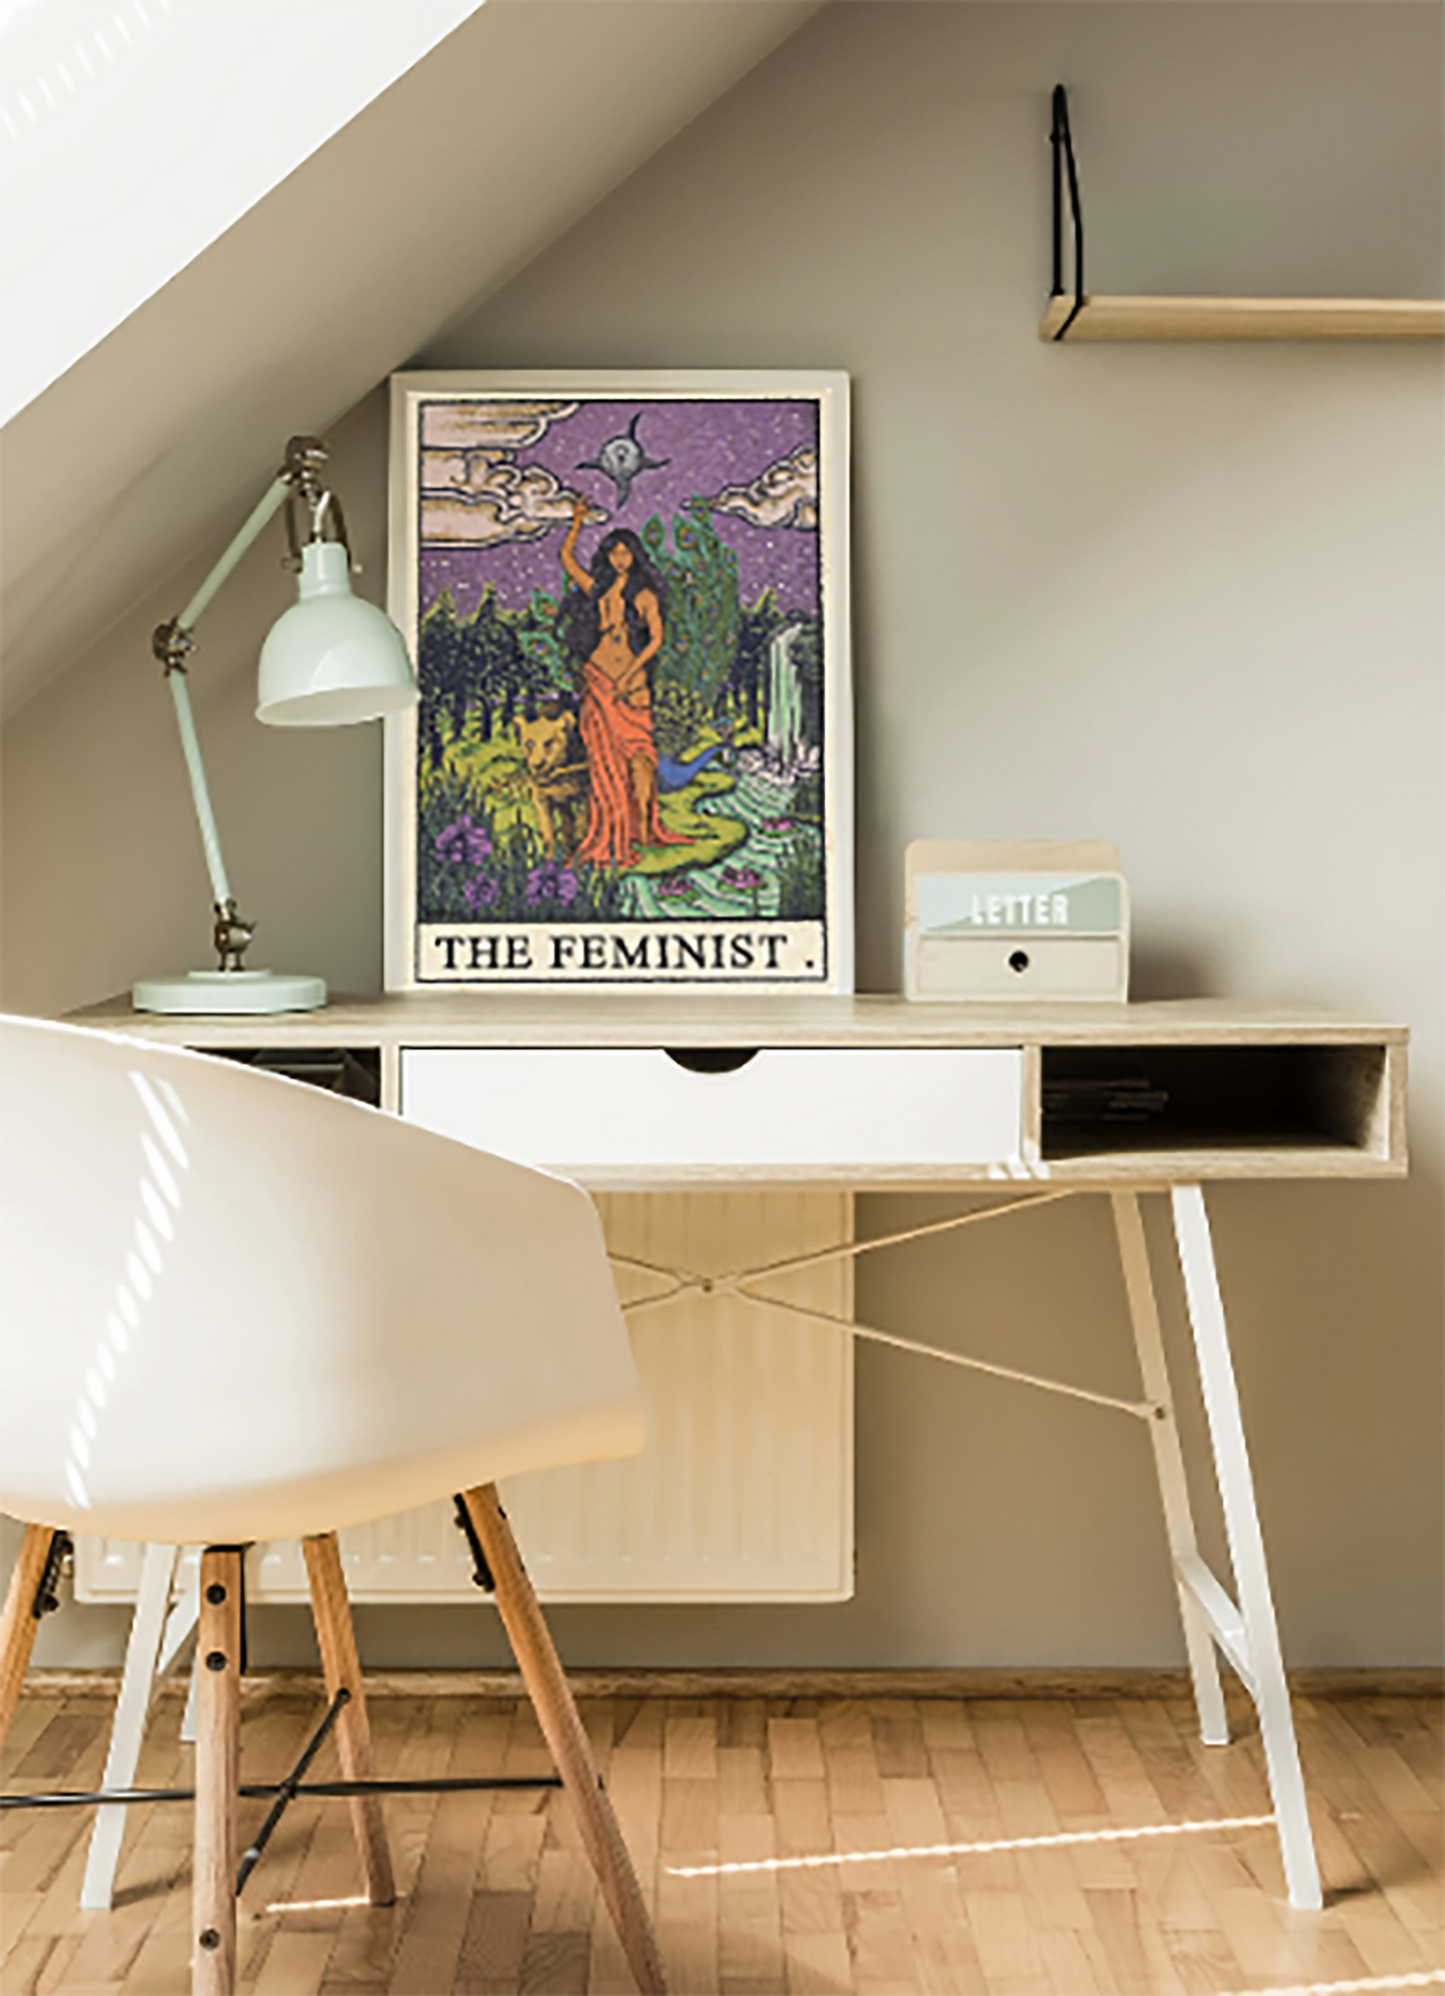 "The Feminist" Framed Premium Matte Poster